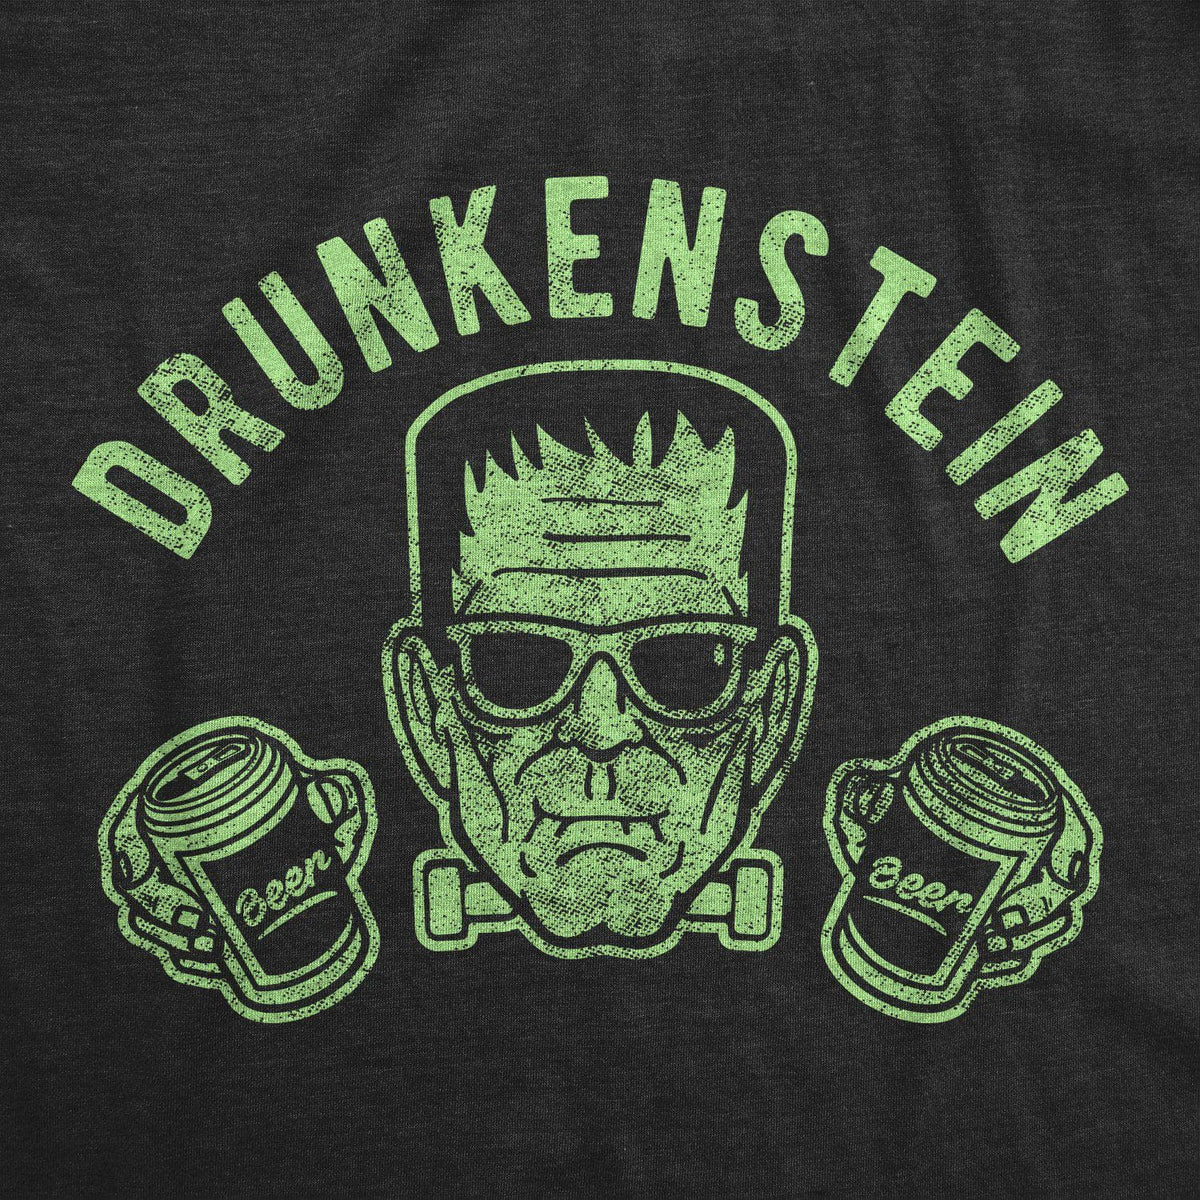 Drunkenstein Men&#39;s Tshirt - Crazy Dog T-Shirts